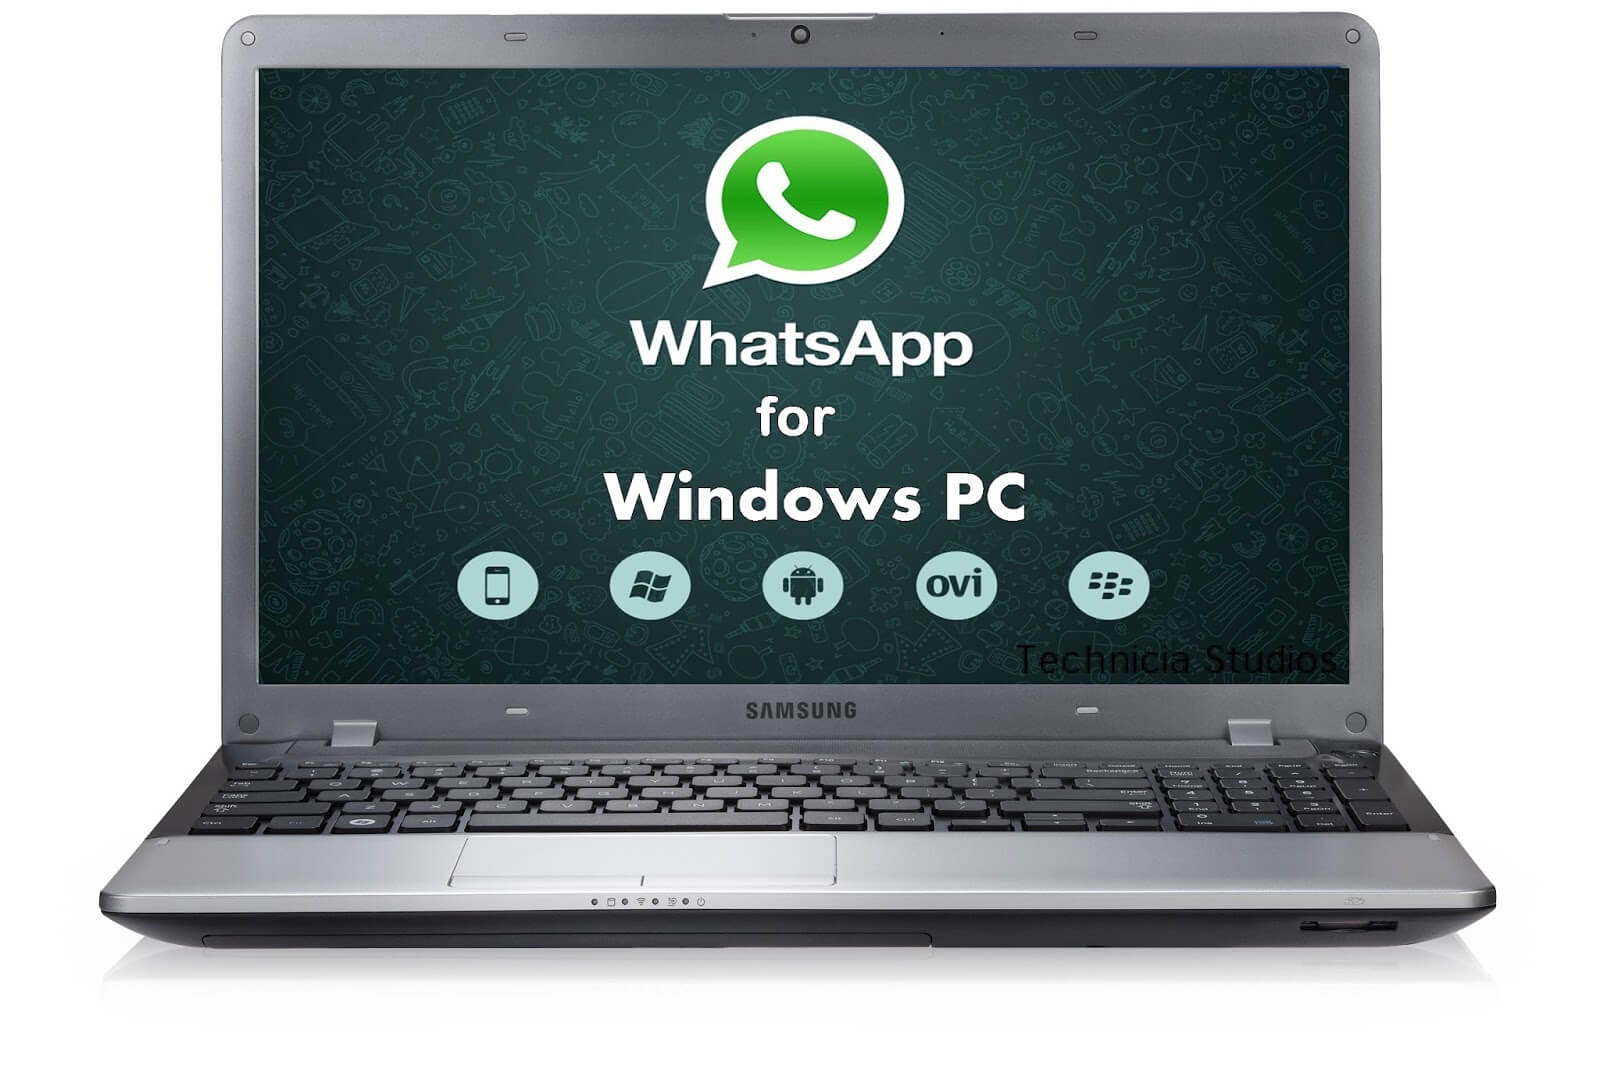 whatsapp for windows 10 pc